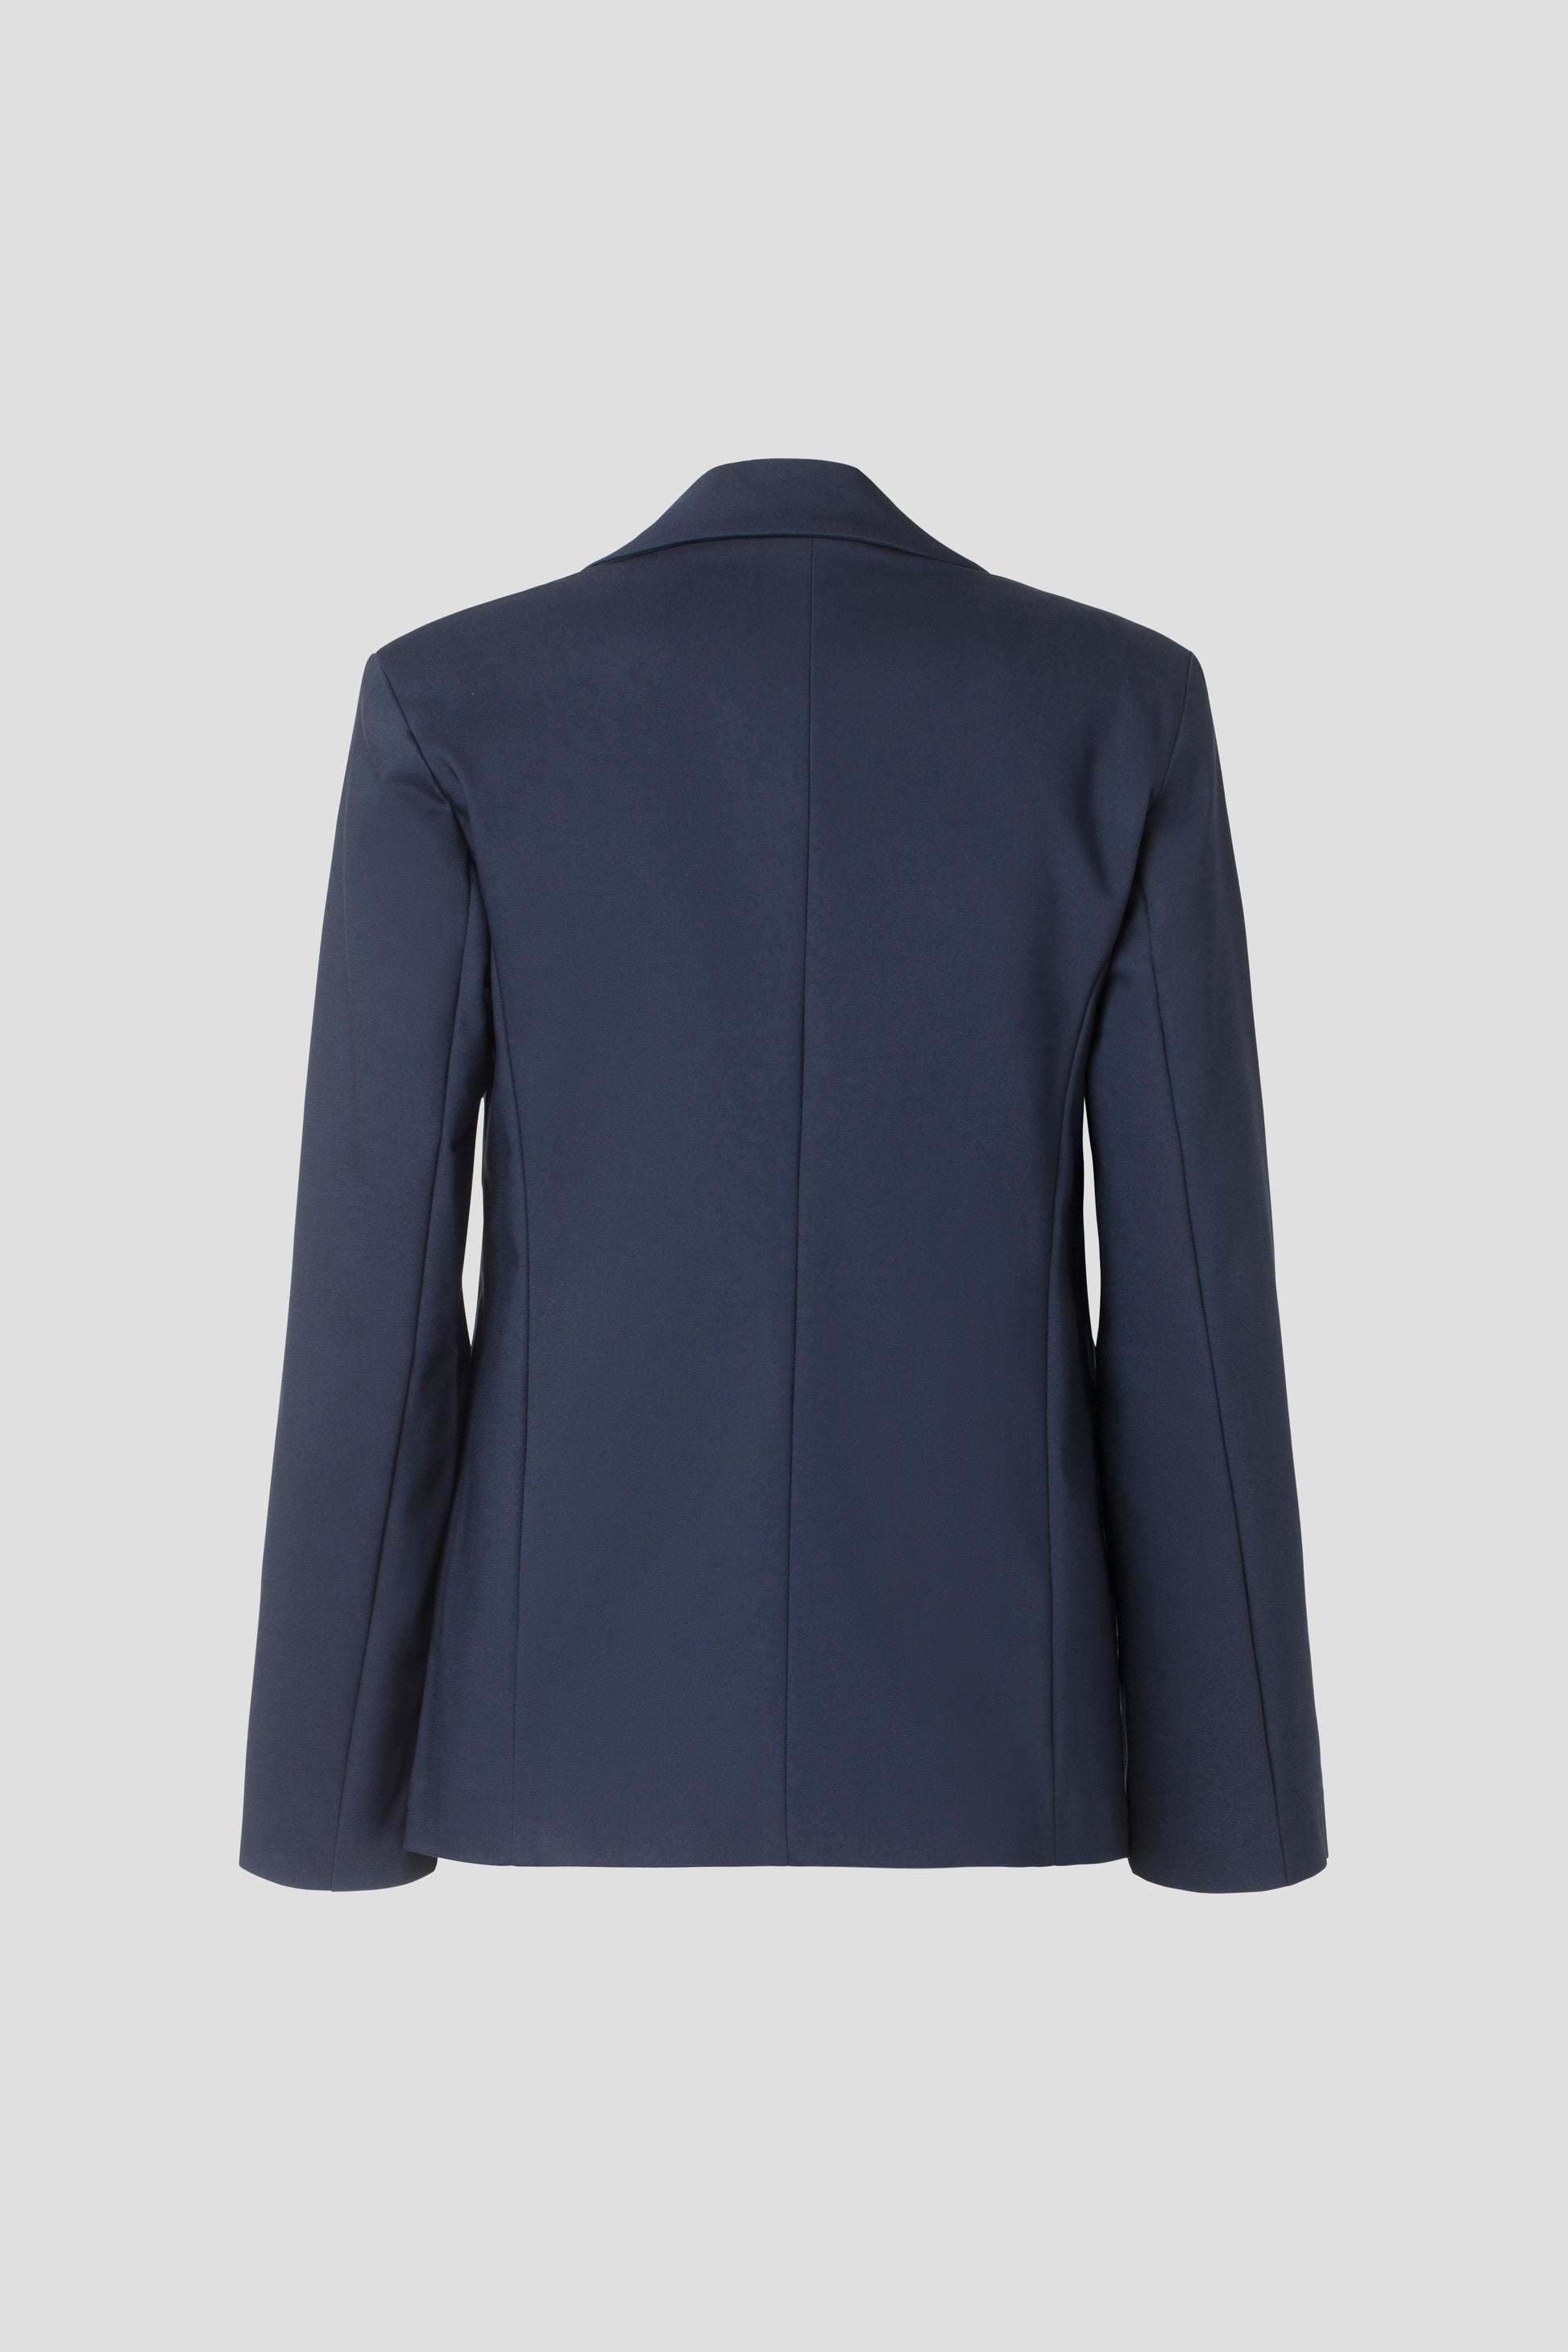 IVY Copenhagen IVY-Alice Essential Blazer Coats & Jackets 52 Navy